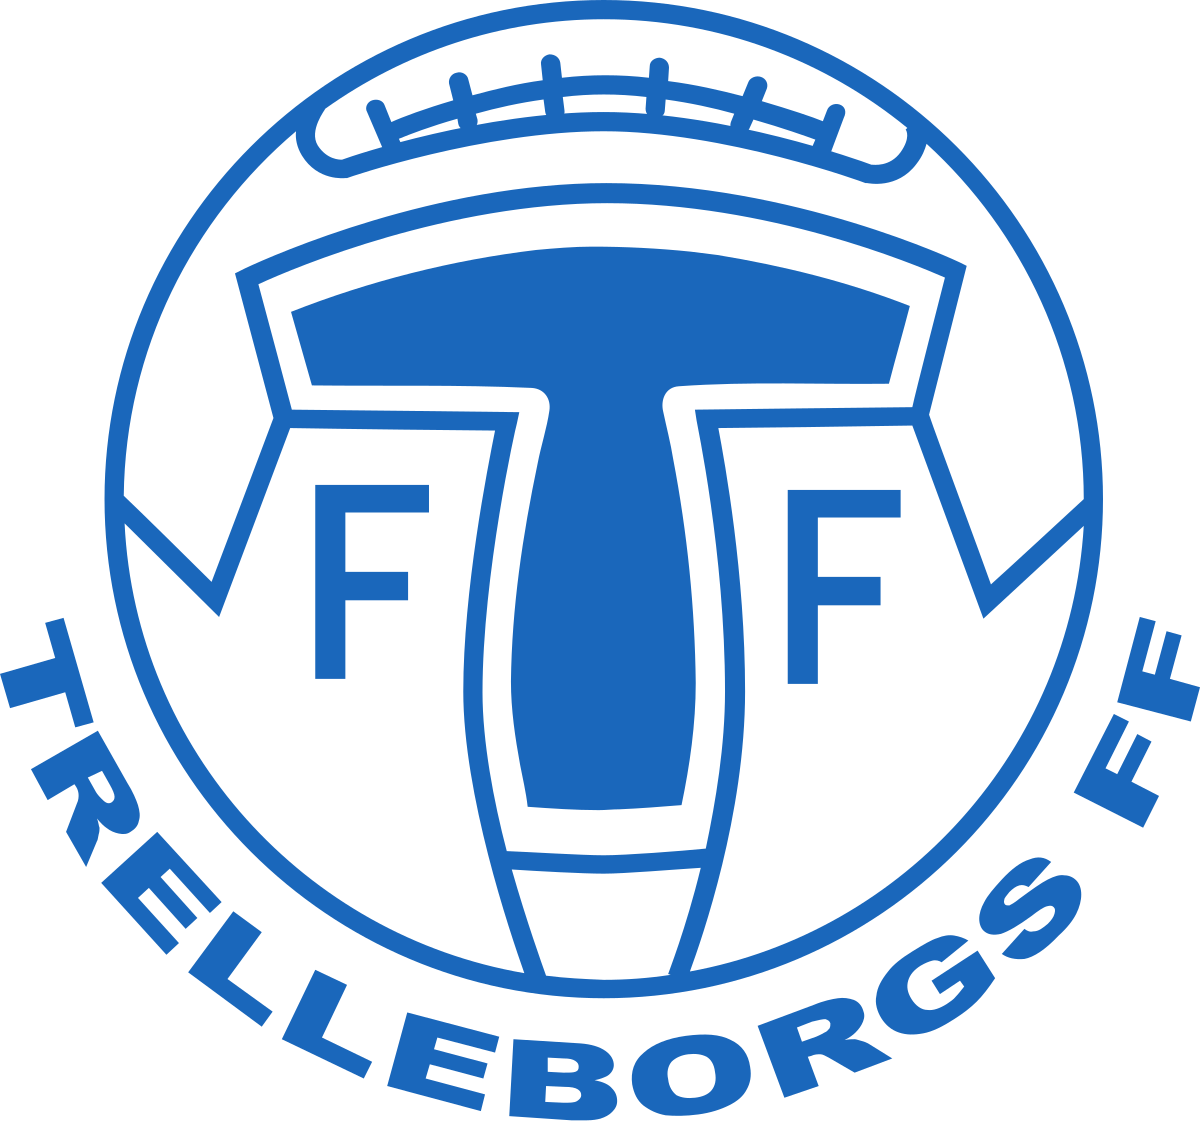 Trelleborgs FF - Wikipedia